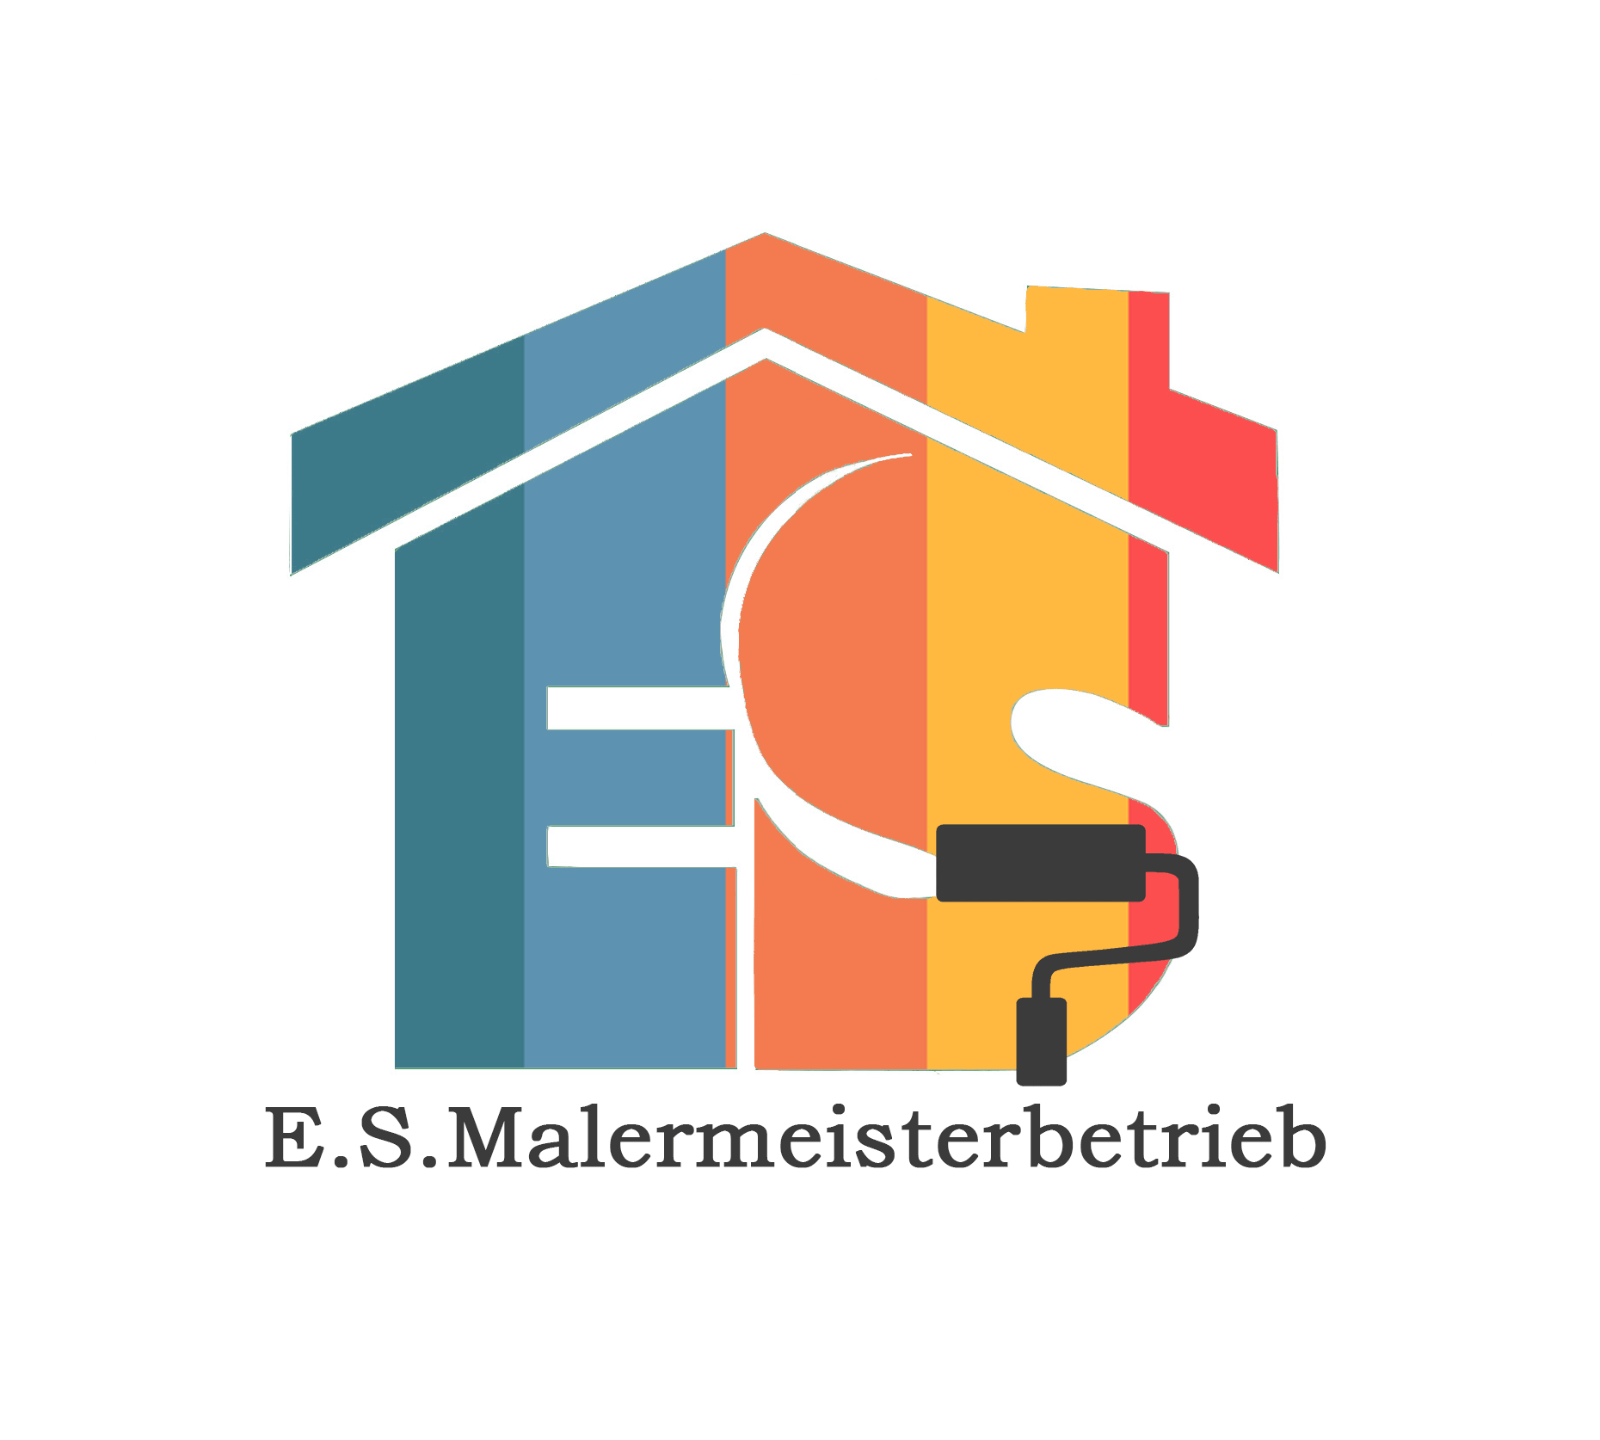 E.S.Malermeister